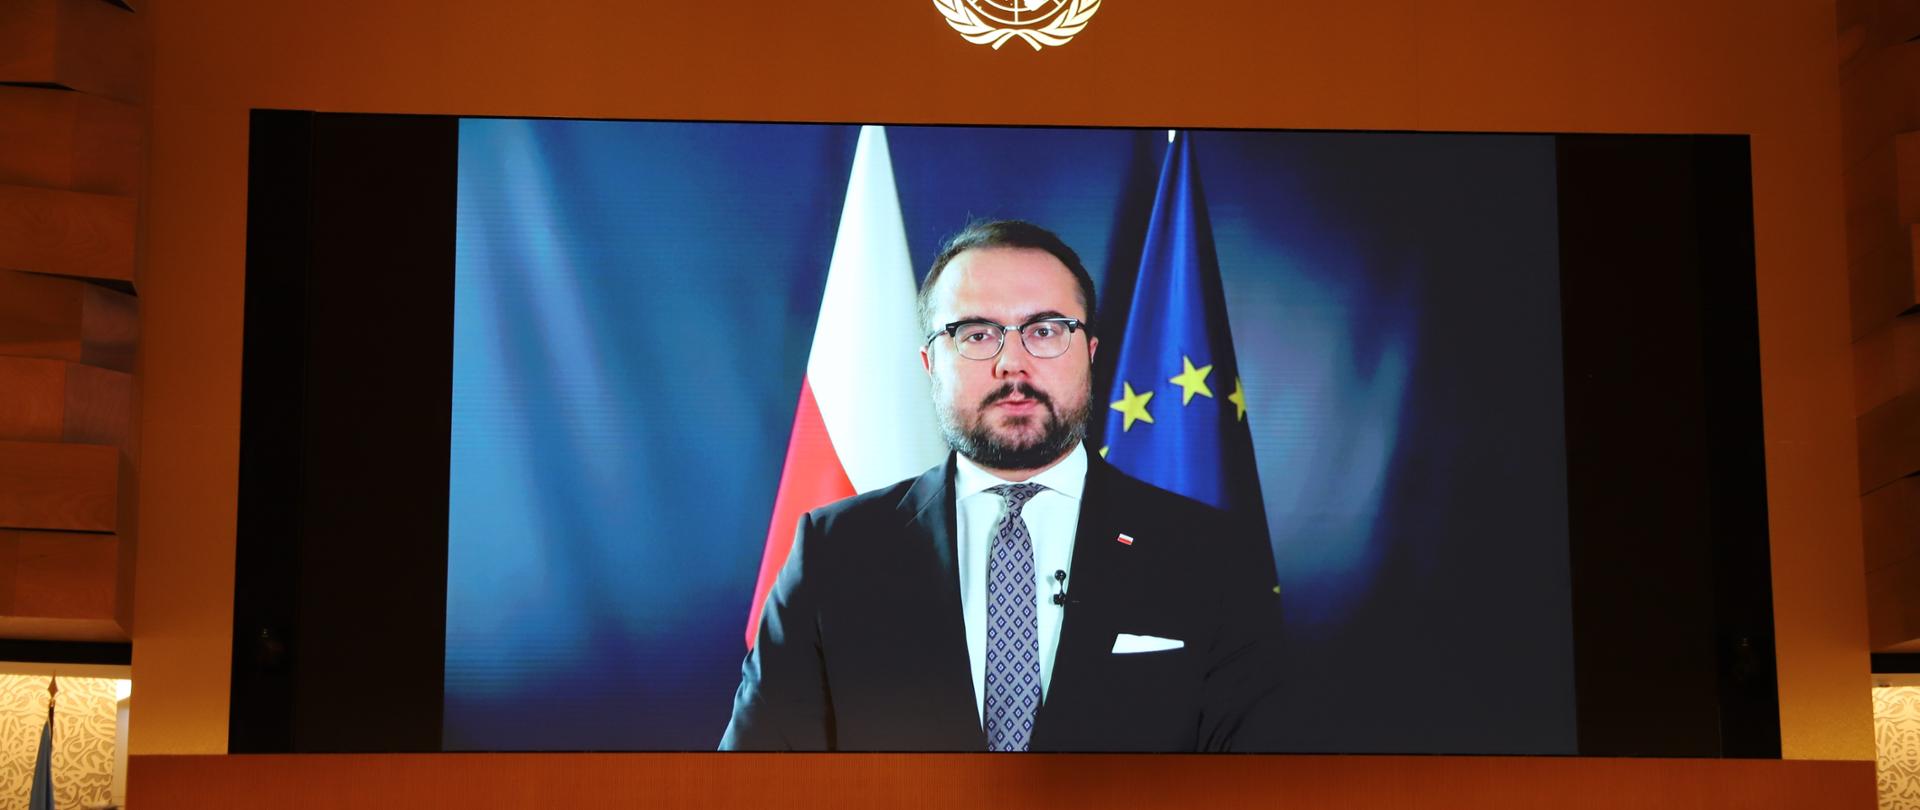 Duży monitor na ścianie z wyświetlanym obrazem brodatego mężczyzny w garniturze i krawacie na tle flagi polskiej i unijnej. Pod monitorem przy stole siedzą ludzie. 